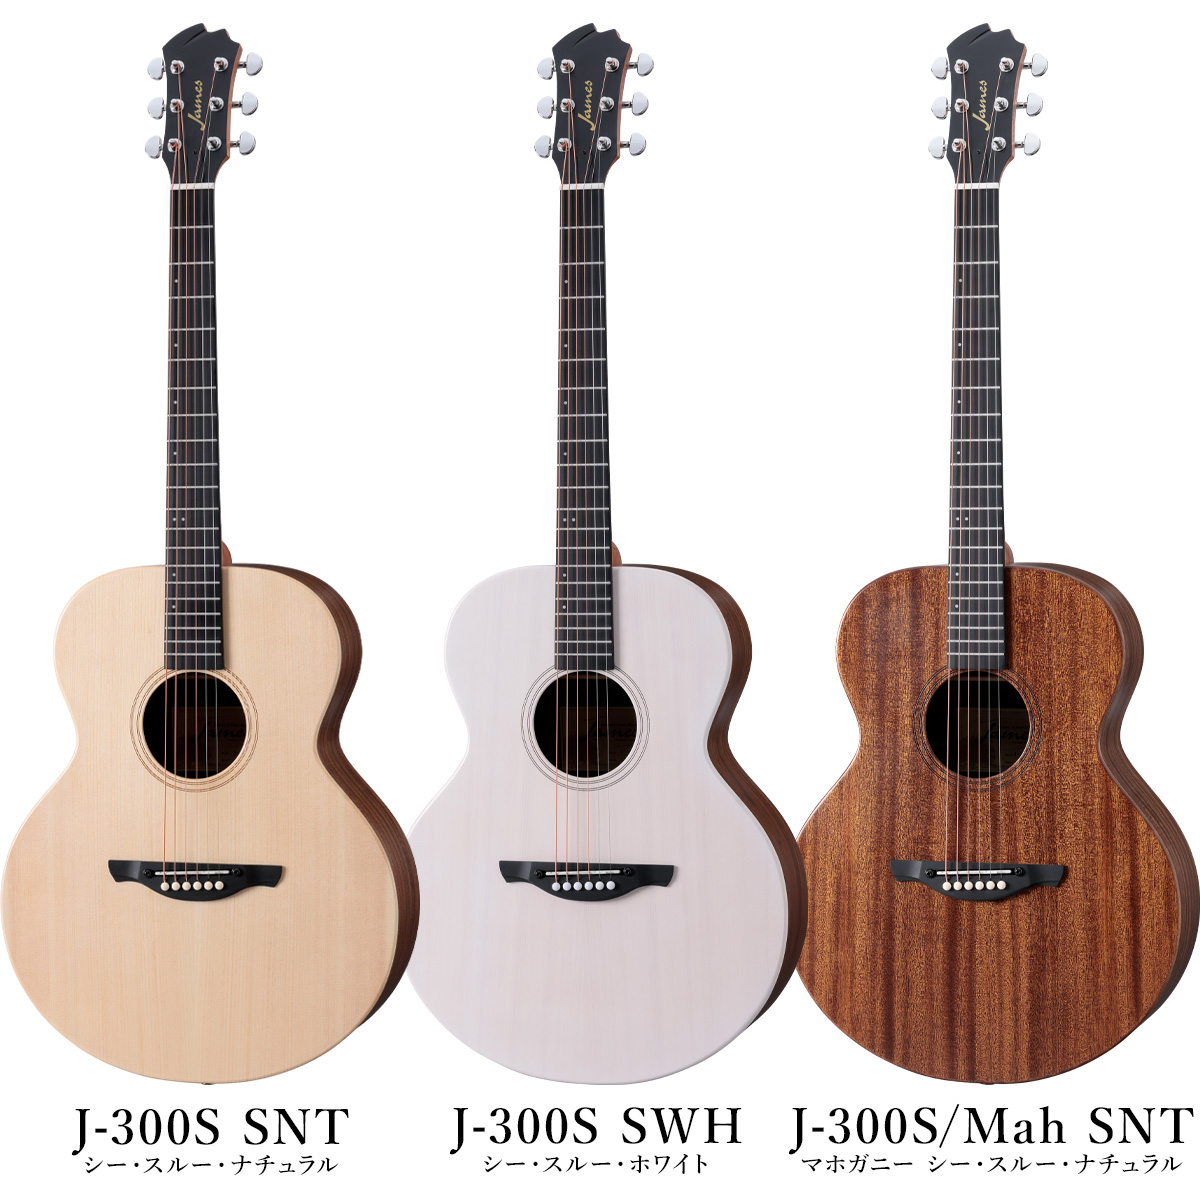 アコースティックギター】「James」 より新モデル「J-300S / J-300S 